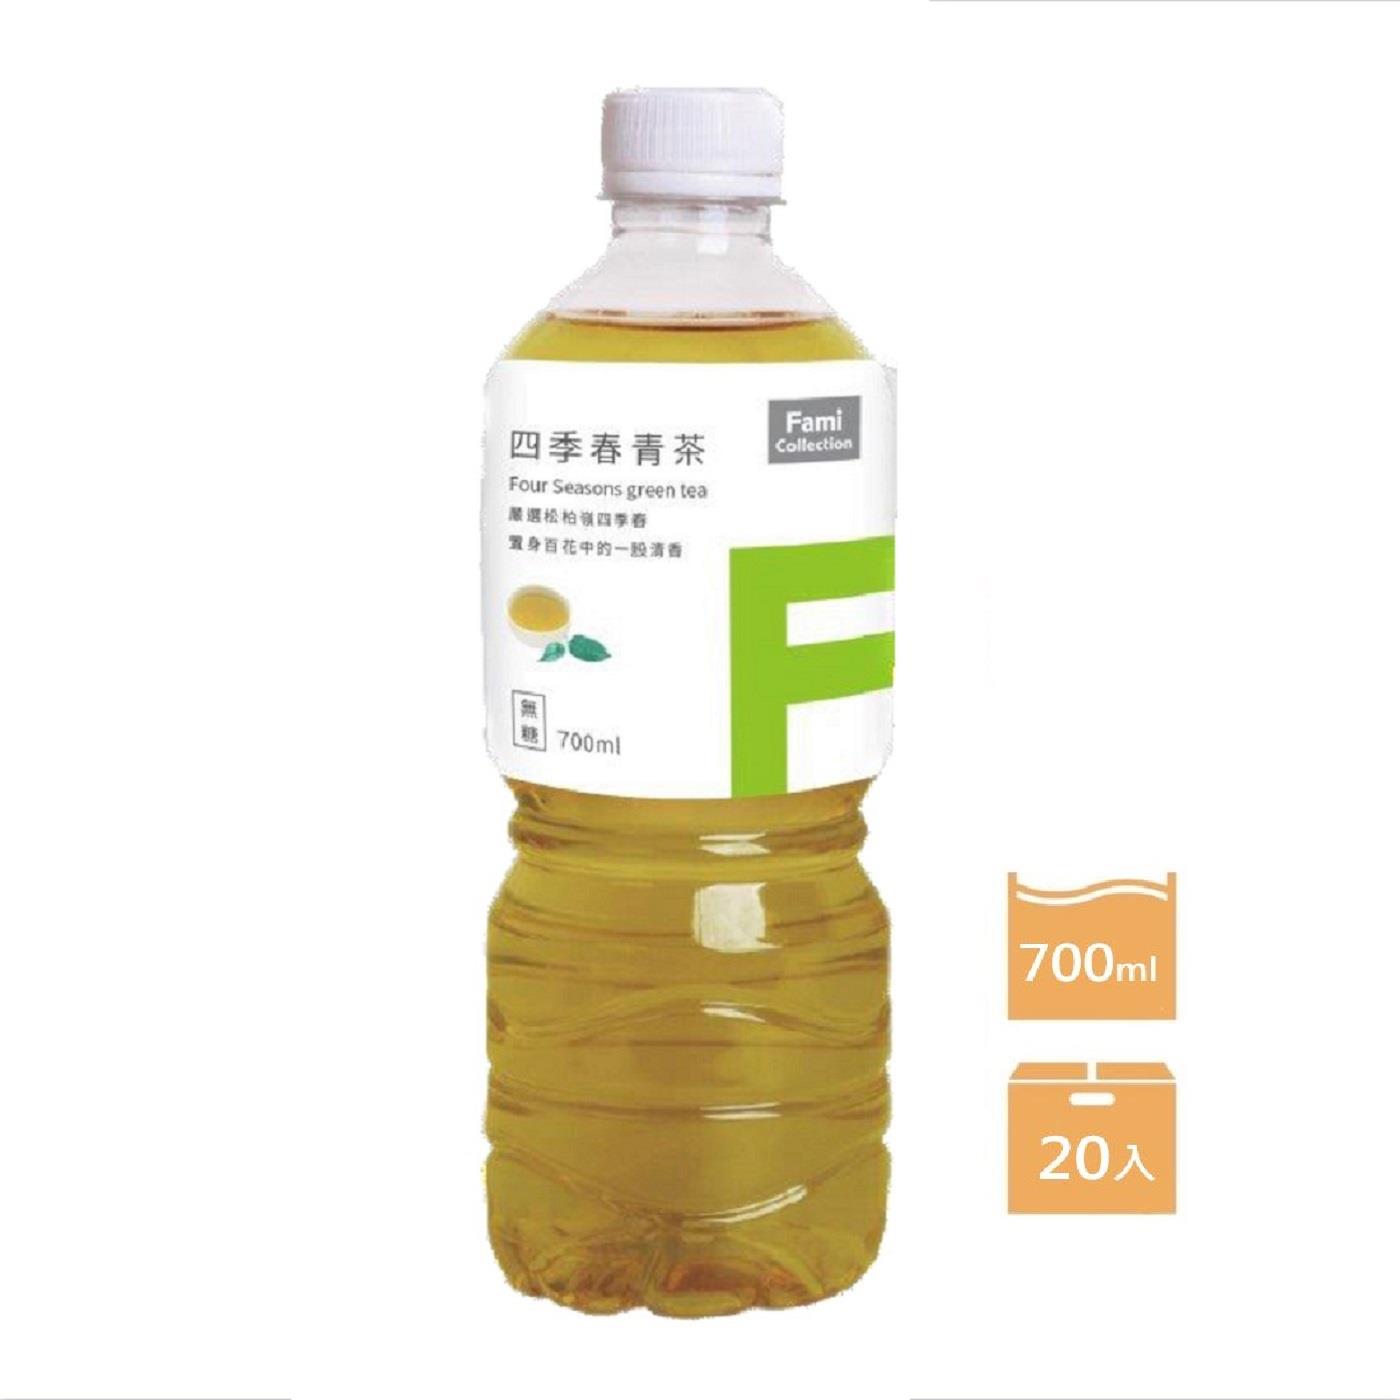 【FMC】箱購FMC四季春青茶(700mlx20)